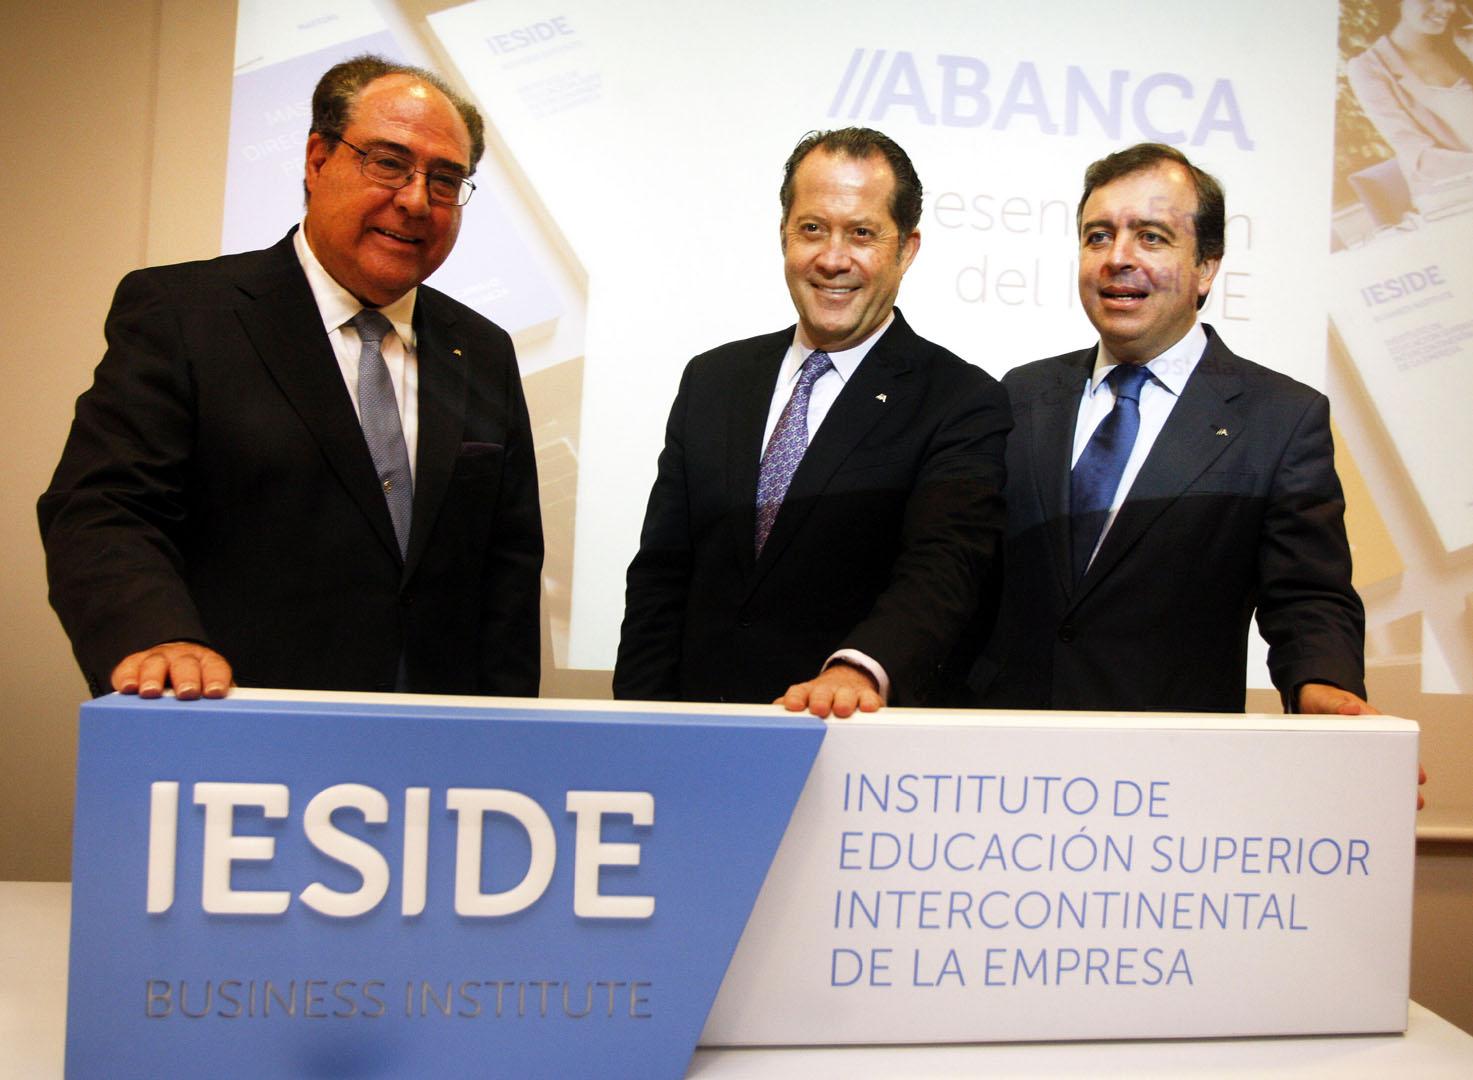 Miguel Ángel Escotet, Juan Carlos Escotet y Francisco Botas presentado Ieside.